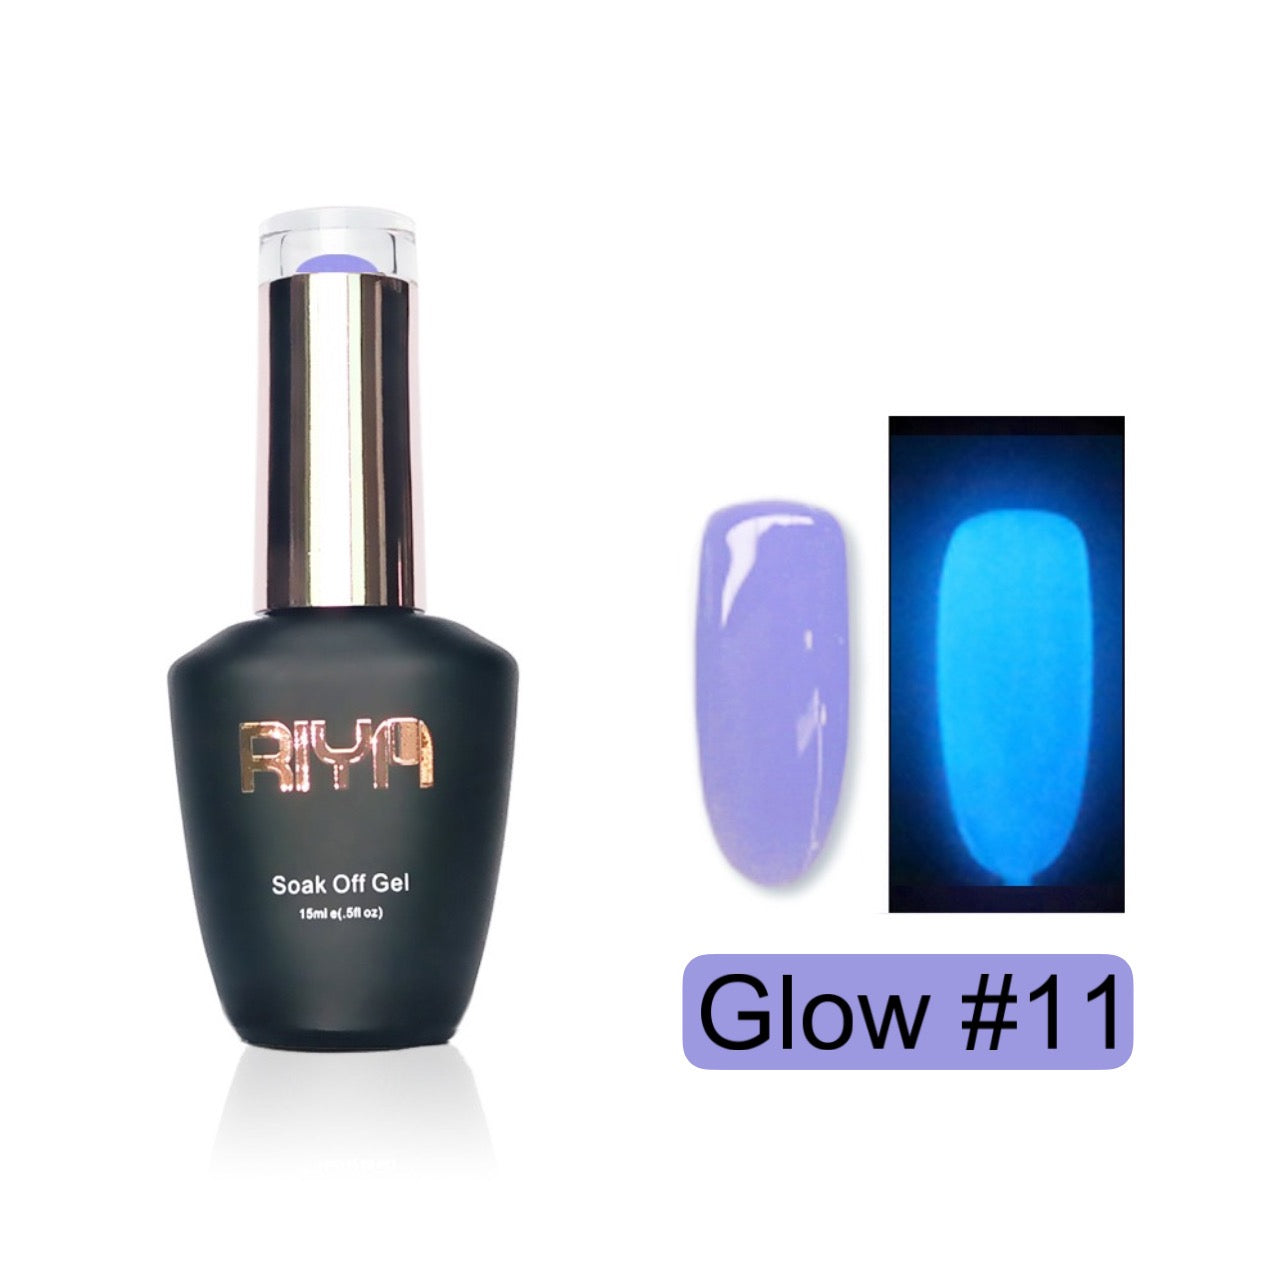 Riya's Glow Gel 11